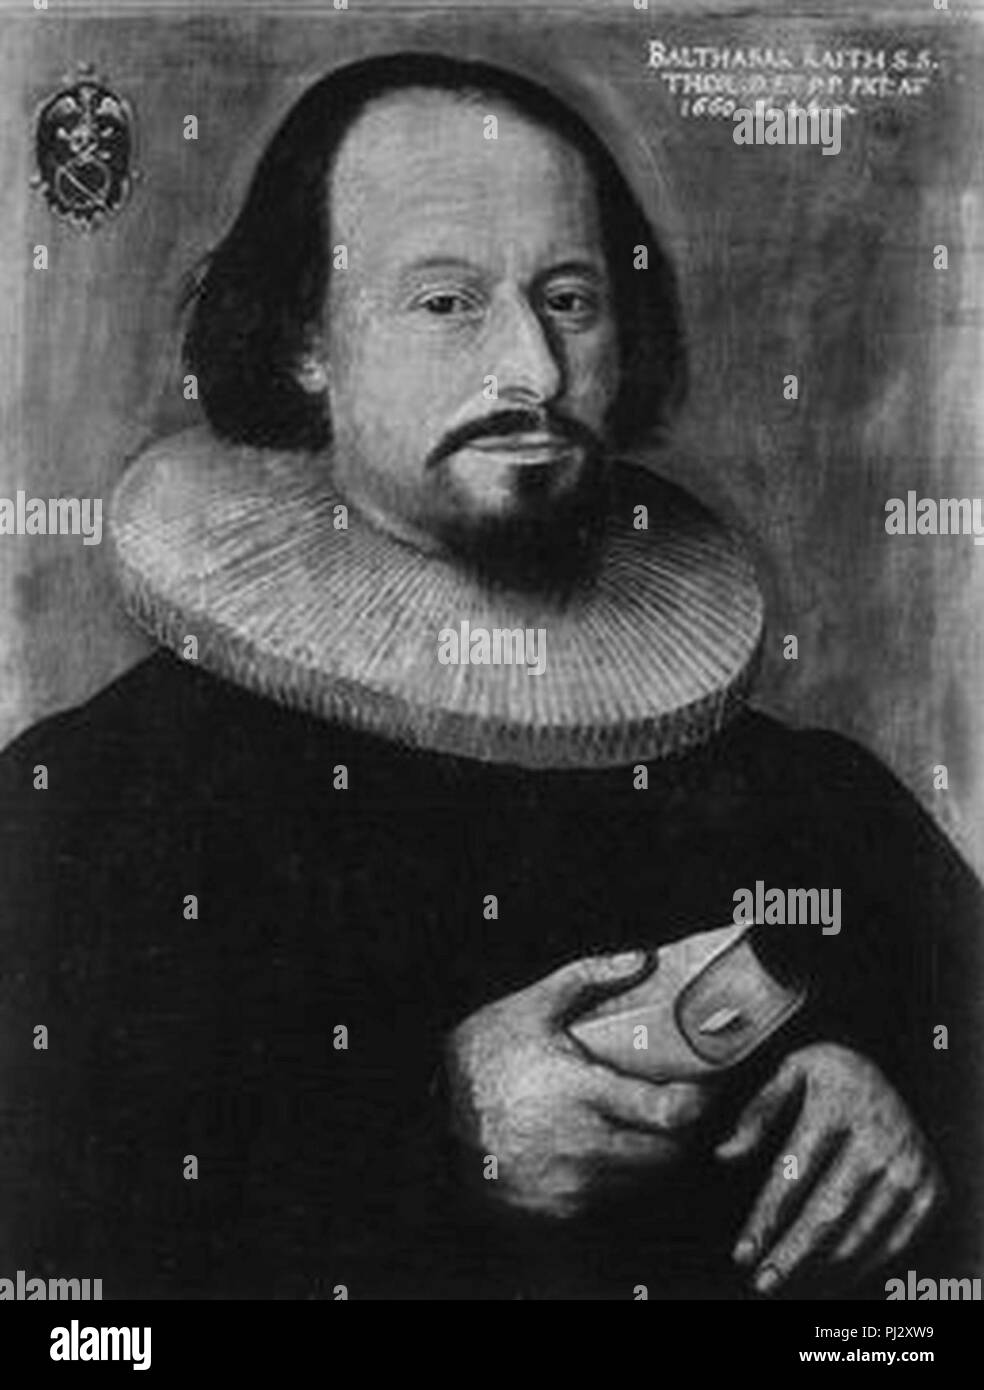 Balthasar Raith (1616-1683). Stock Photo